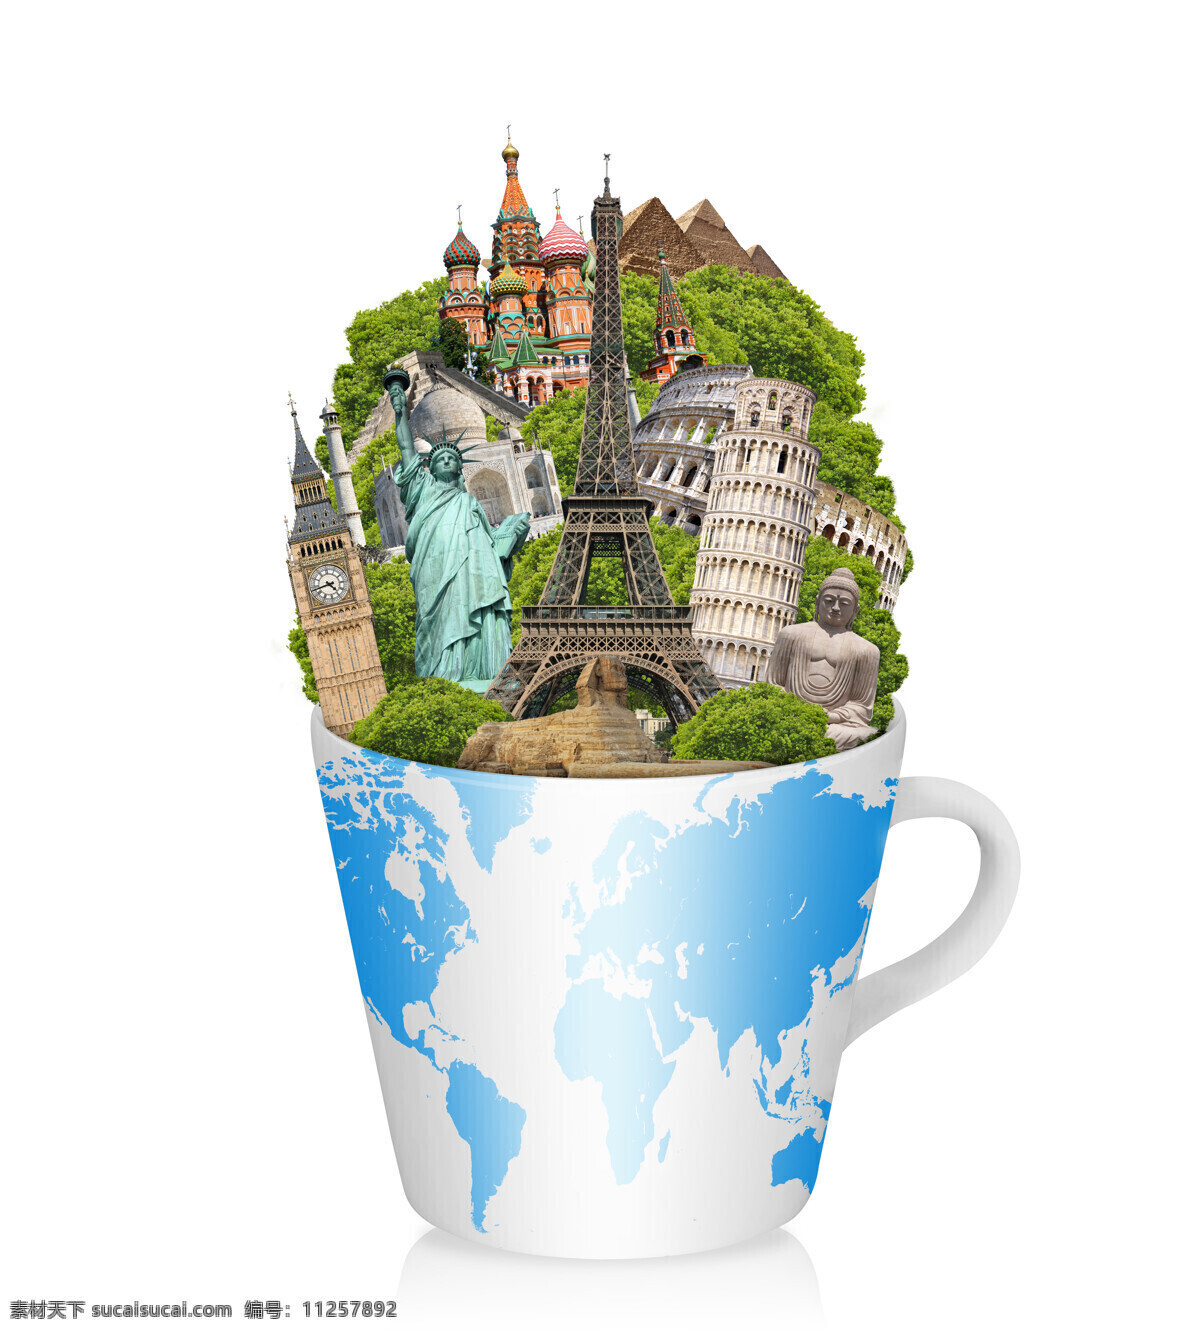 杯子 里 著名 建筑 咖啡杯 金字塔 自由女神 巴黎埃菲尔塔 世界旅行 建筑风景 世界著名建筑 风景名胜 旅游景点 其他类别 生活百科